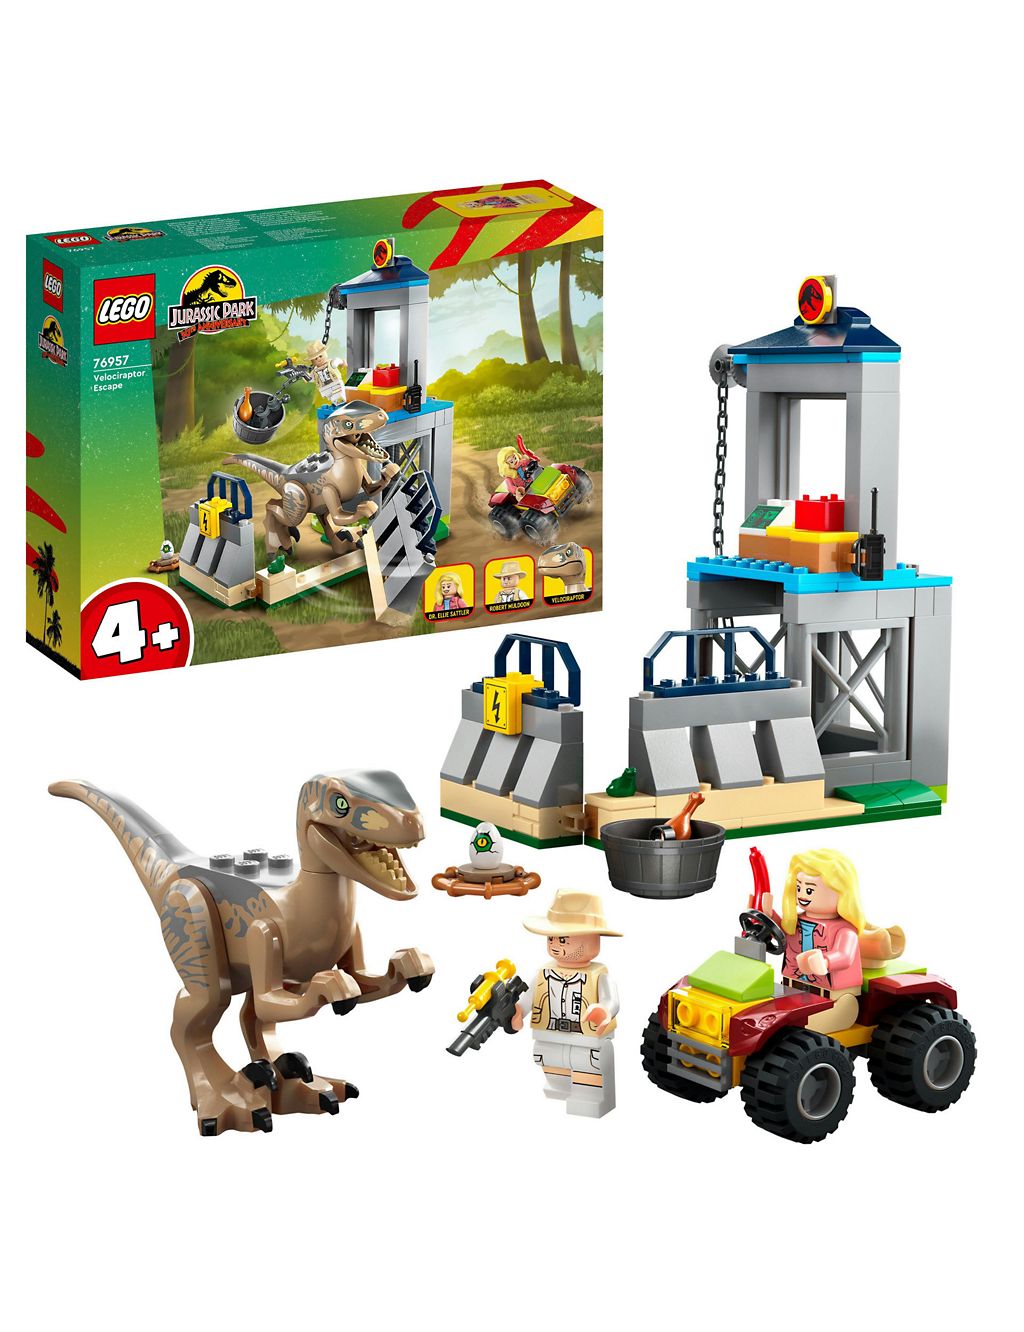 LEGO Jurassic Park Velociraptor Escape Toy Set 
76957 (4+ Yrs) 3 of 6